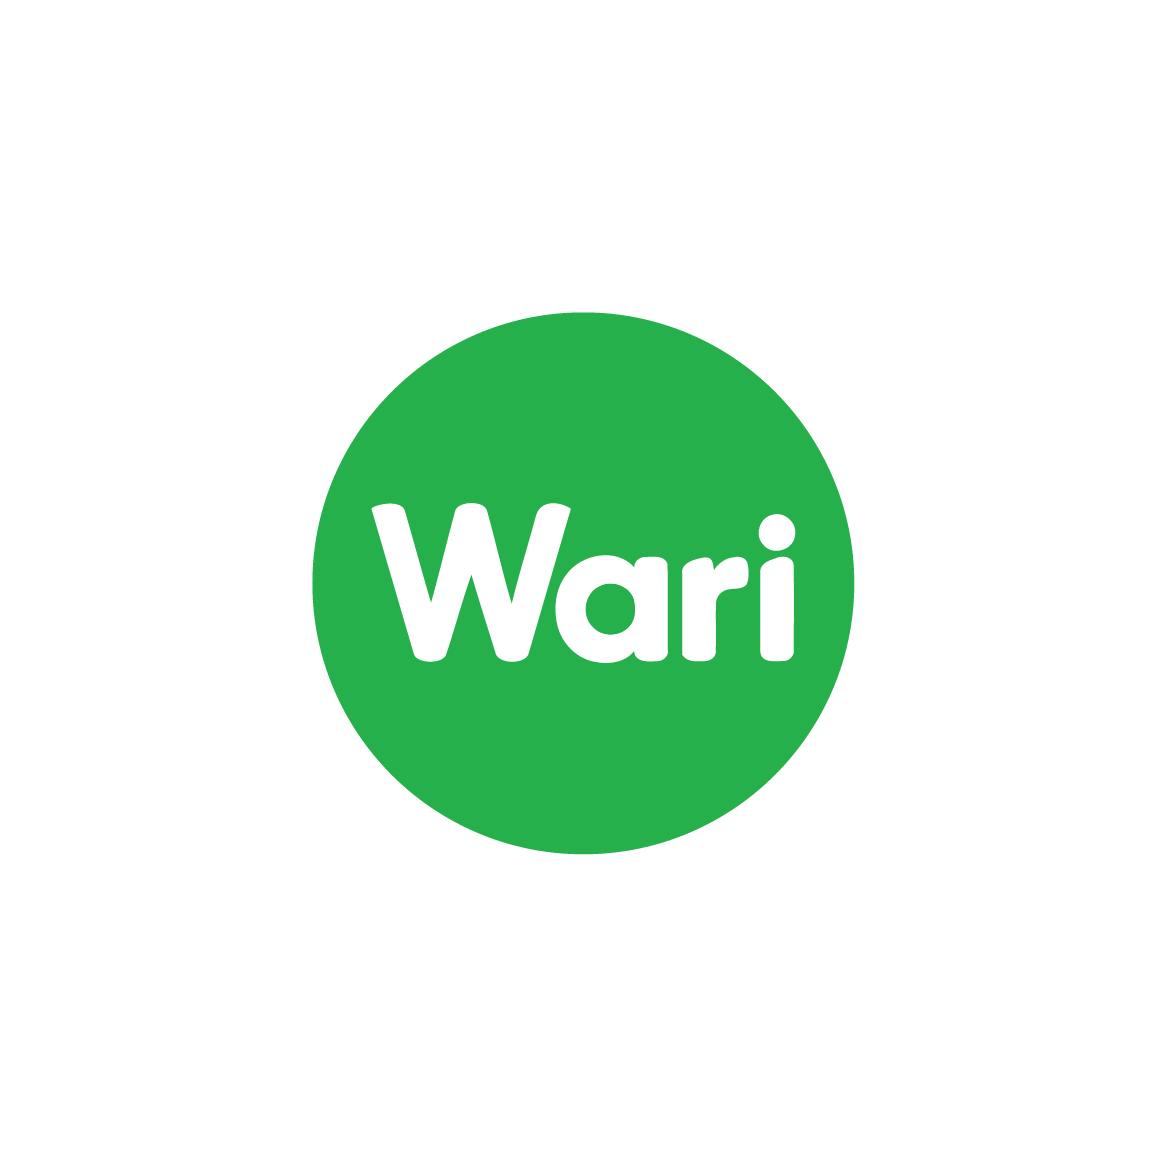 wari